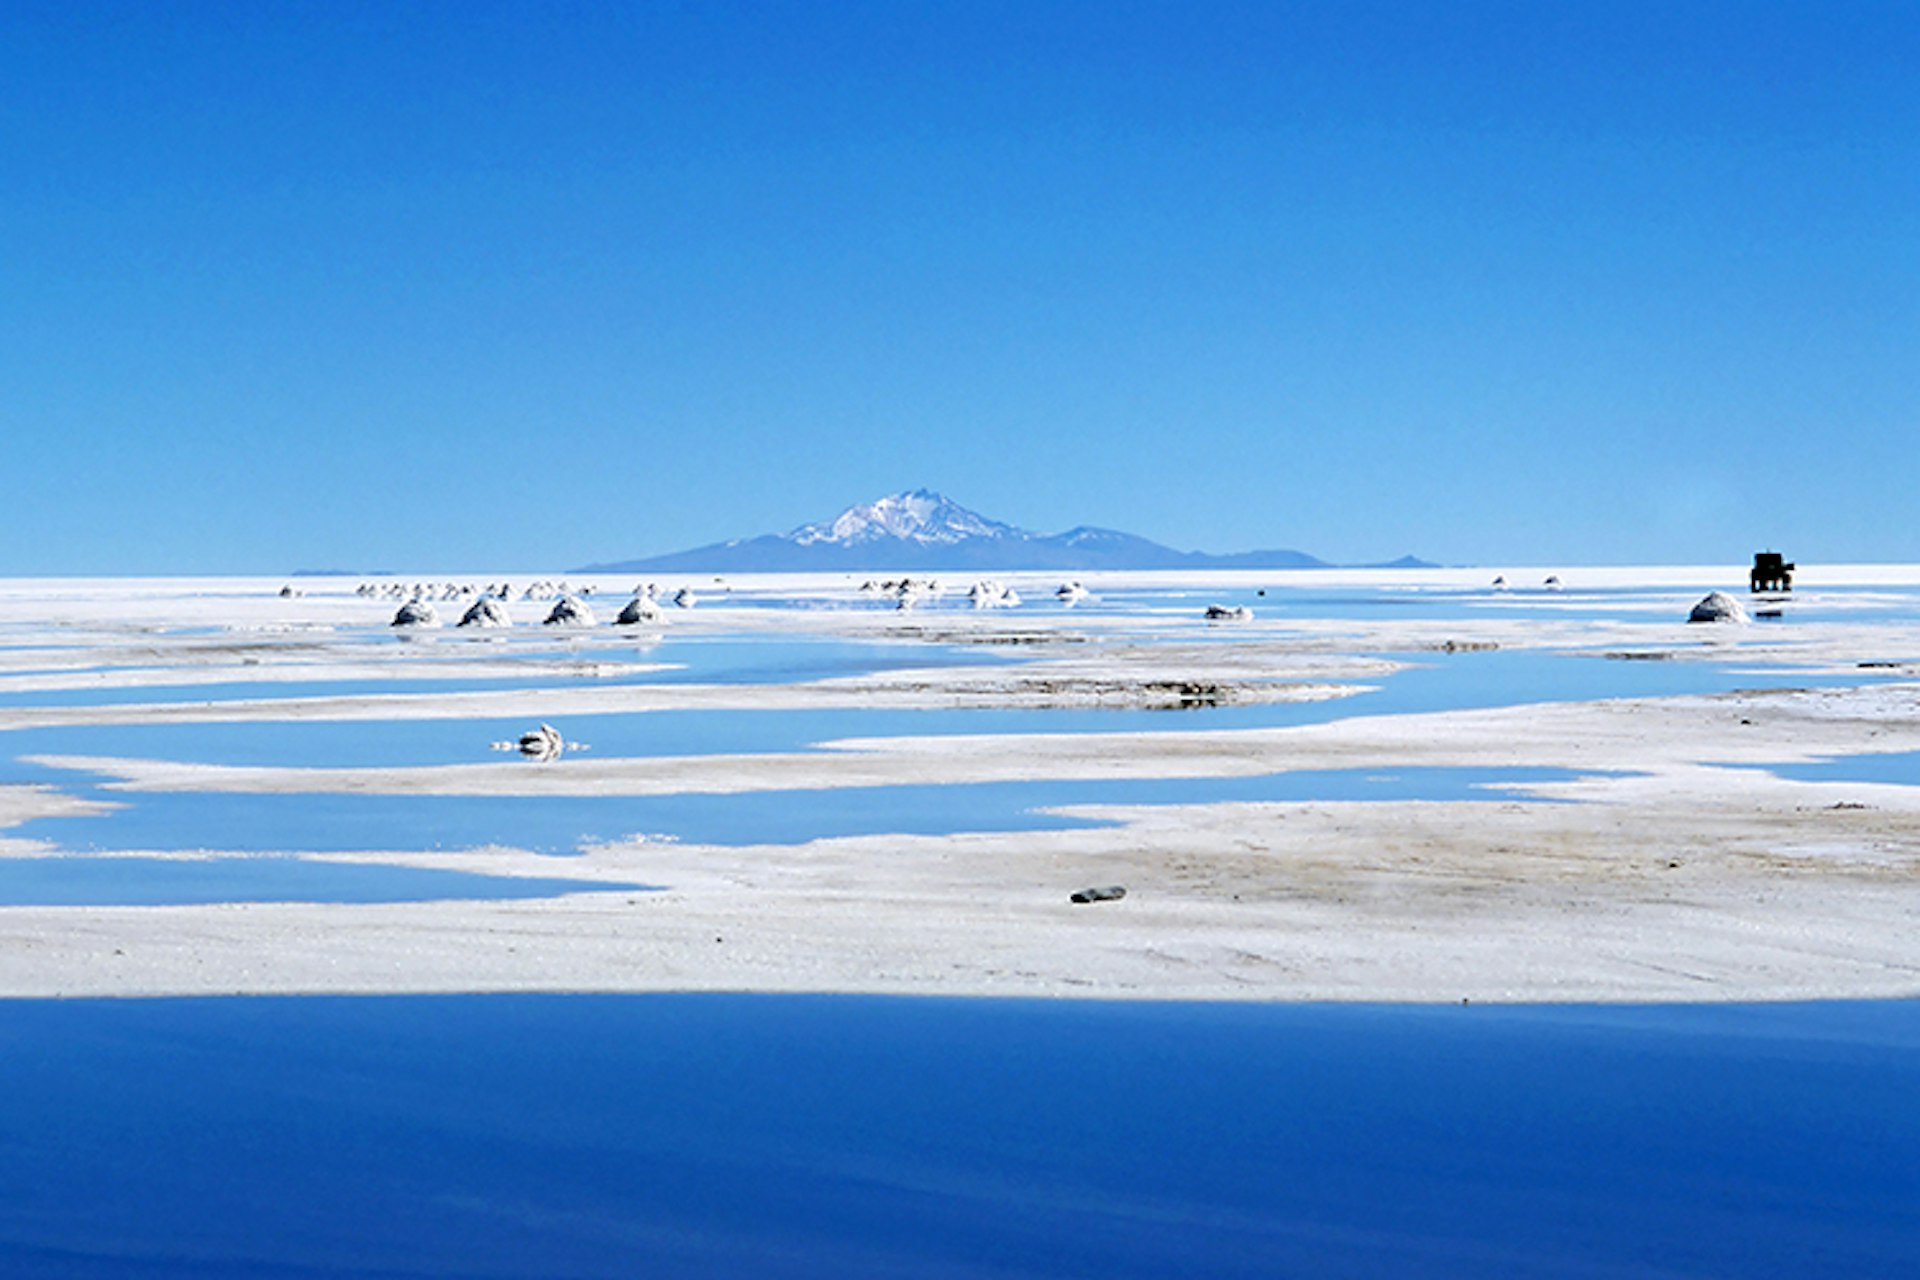 Bolivia's Salar de Uyuni